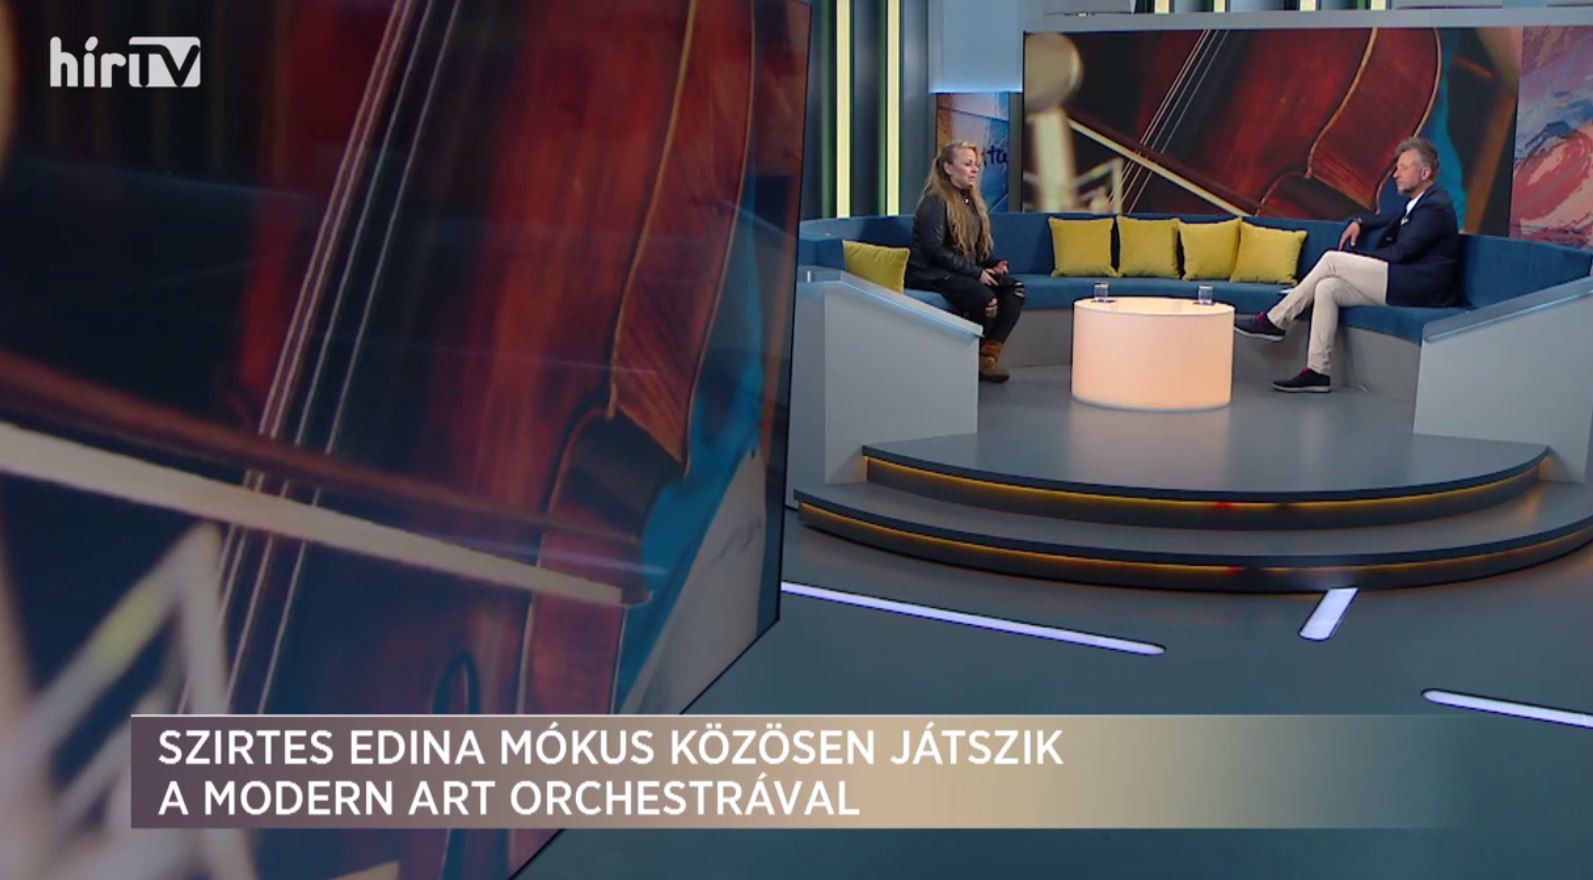 Paletta: Új zenei anyagot mutat be Szirtes Edina Mókus a Modern Art Orchestrával közösen